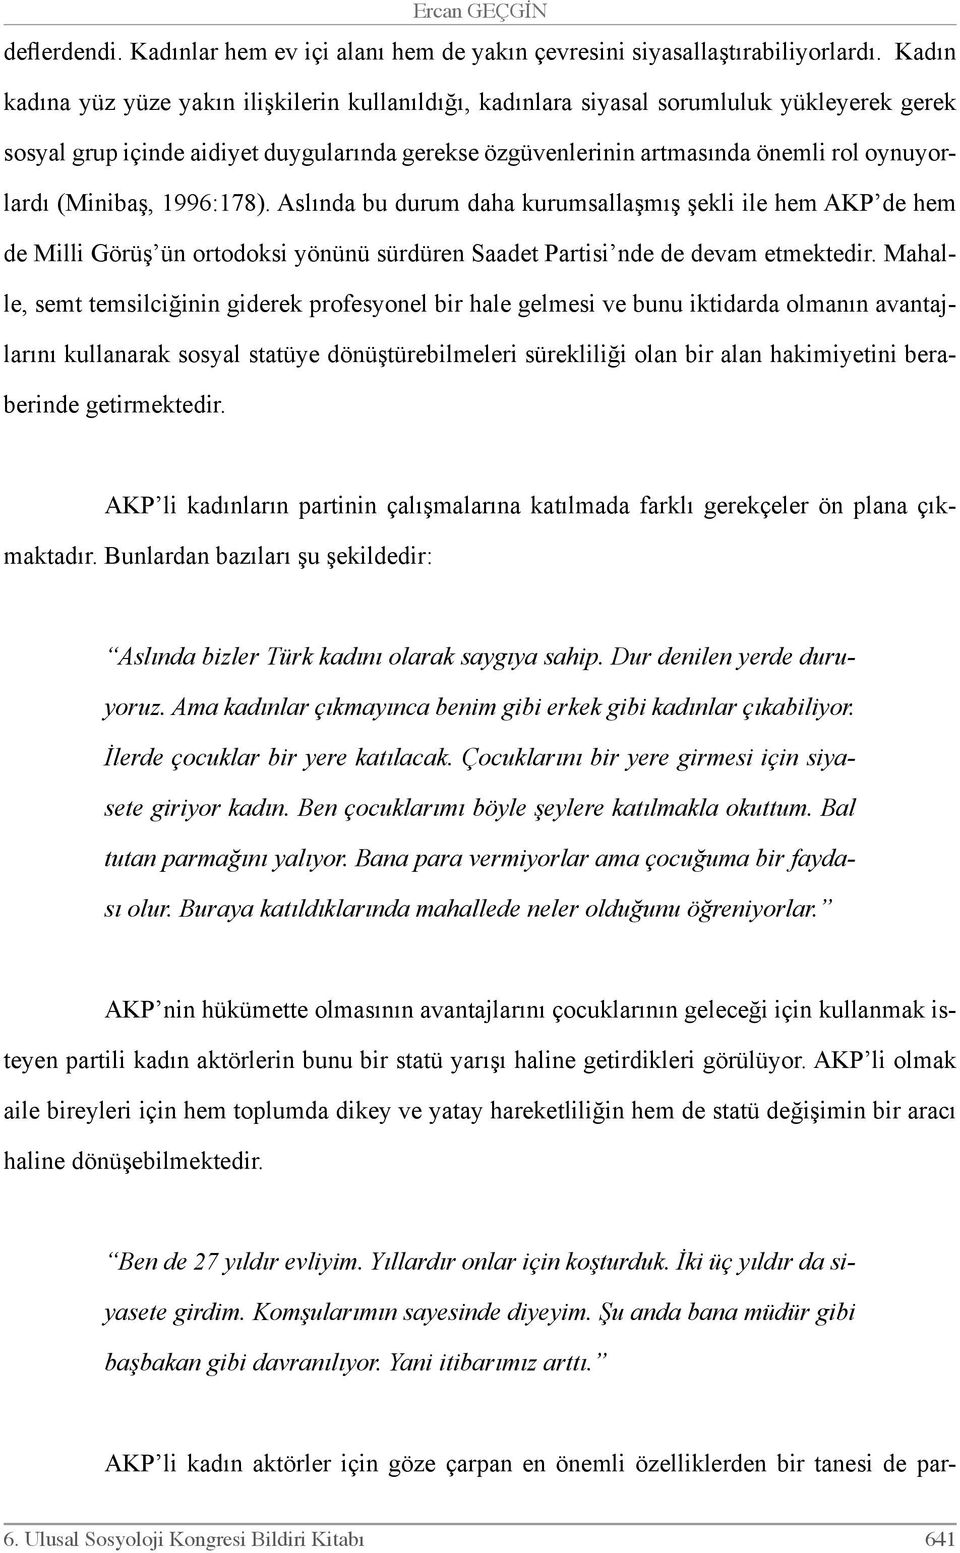 (Minibaş, 1996:178). Aslında bu durum daha kurumsallaşmış şekli ile hem AKP de hem de Milli Görüş ün ortodoksi yönünü sürdüren Saadet Partisi nde de devam etmektedir.